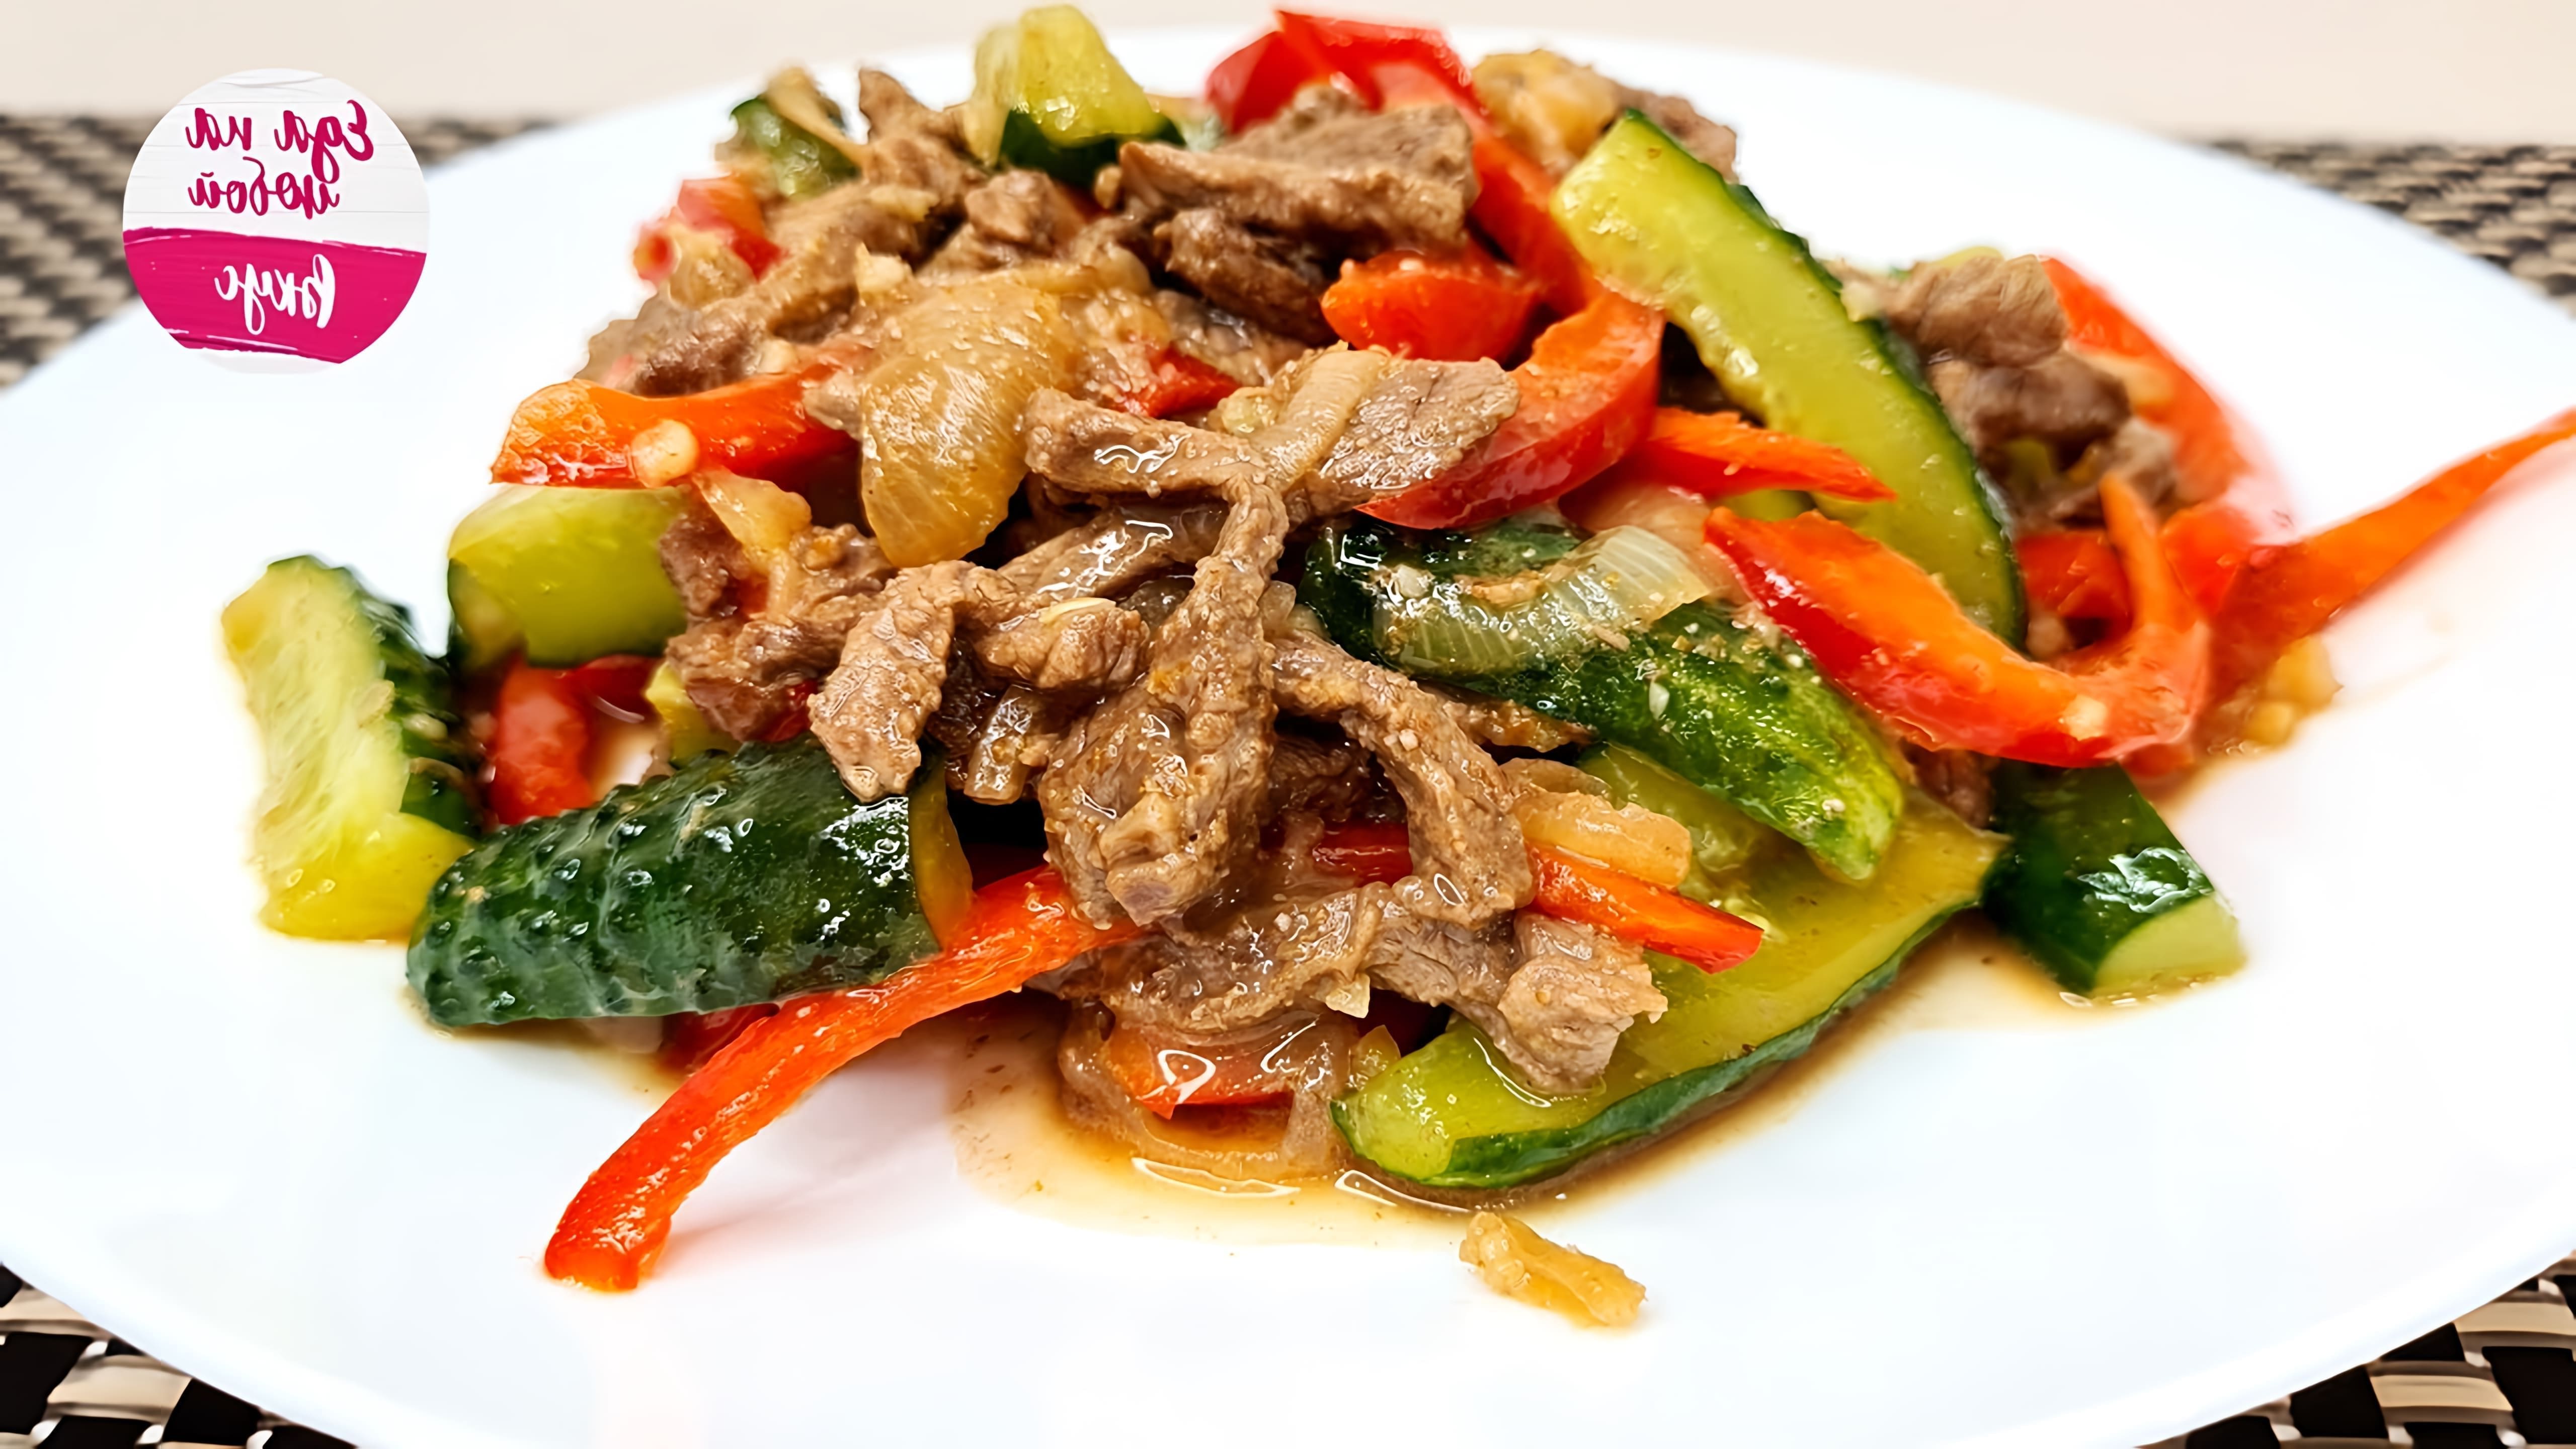 В этом видео демонстрируется рецепт приготовления салата из говядины и огурцов по-китайски